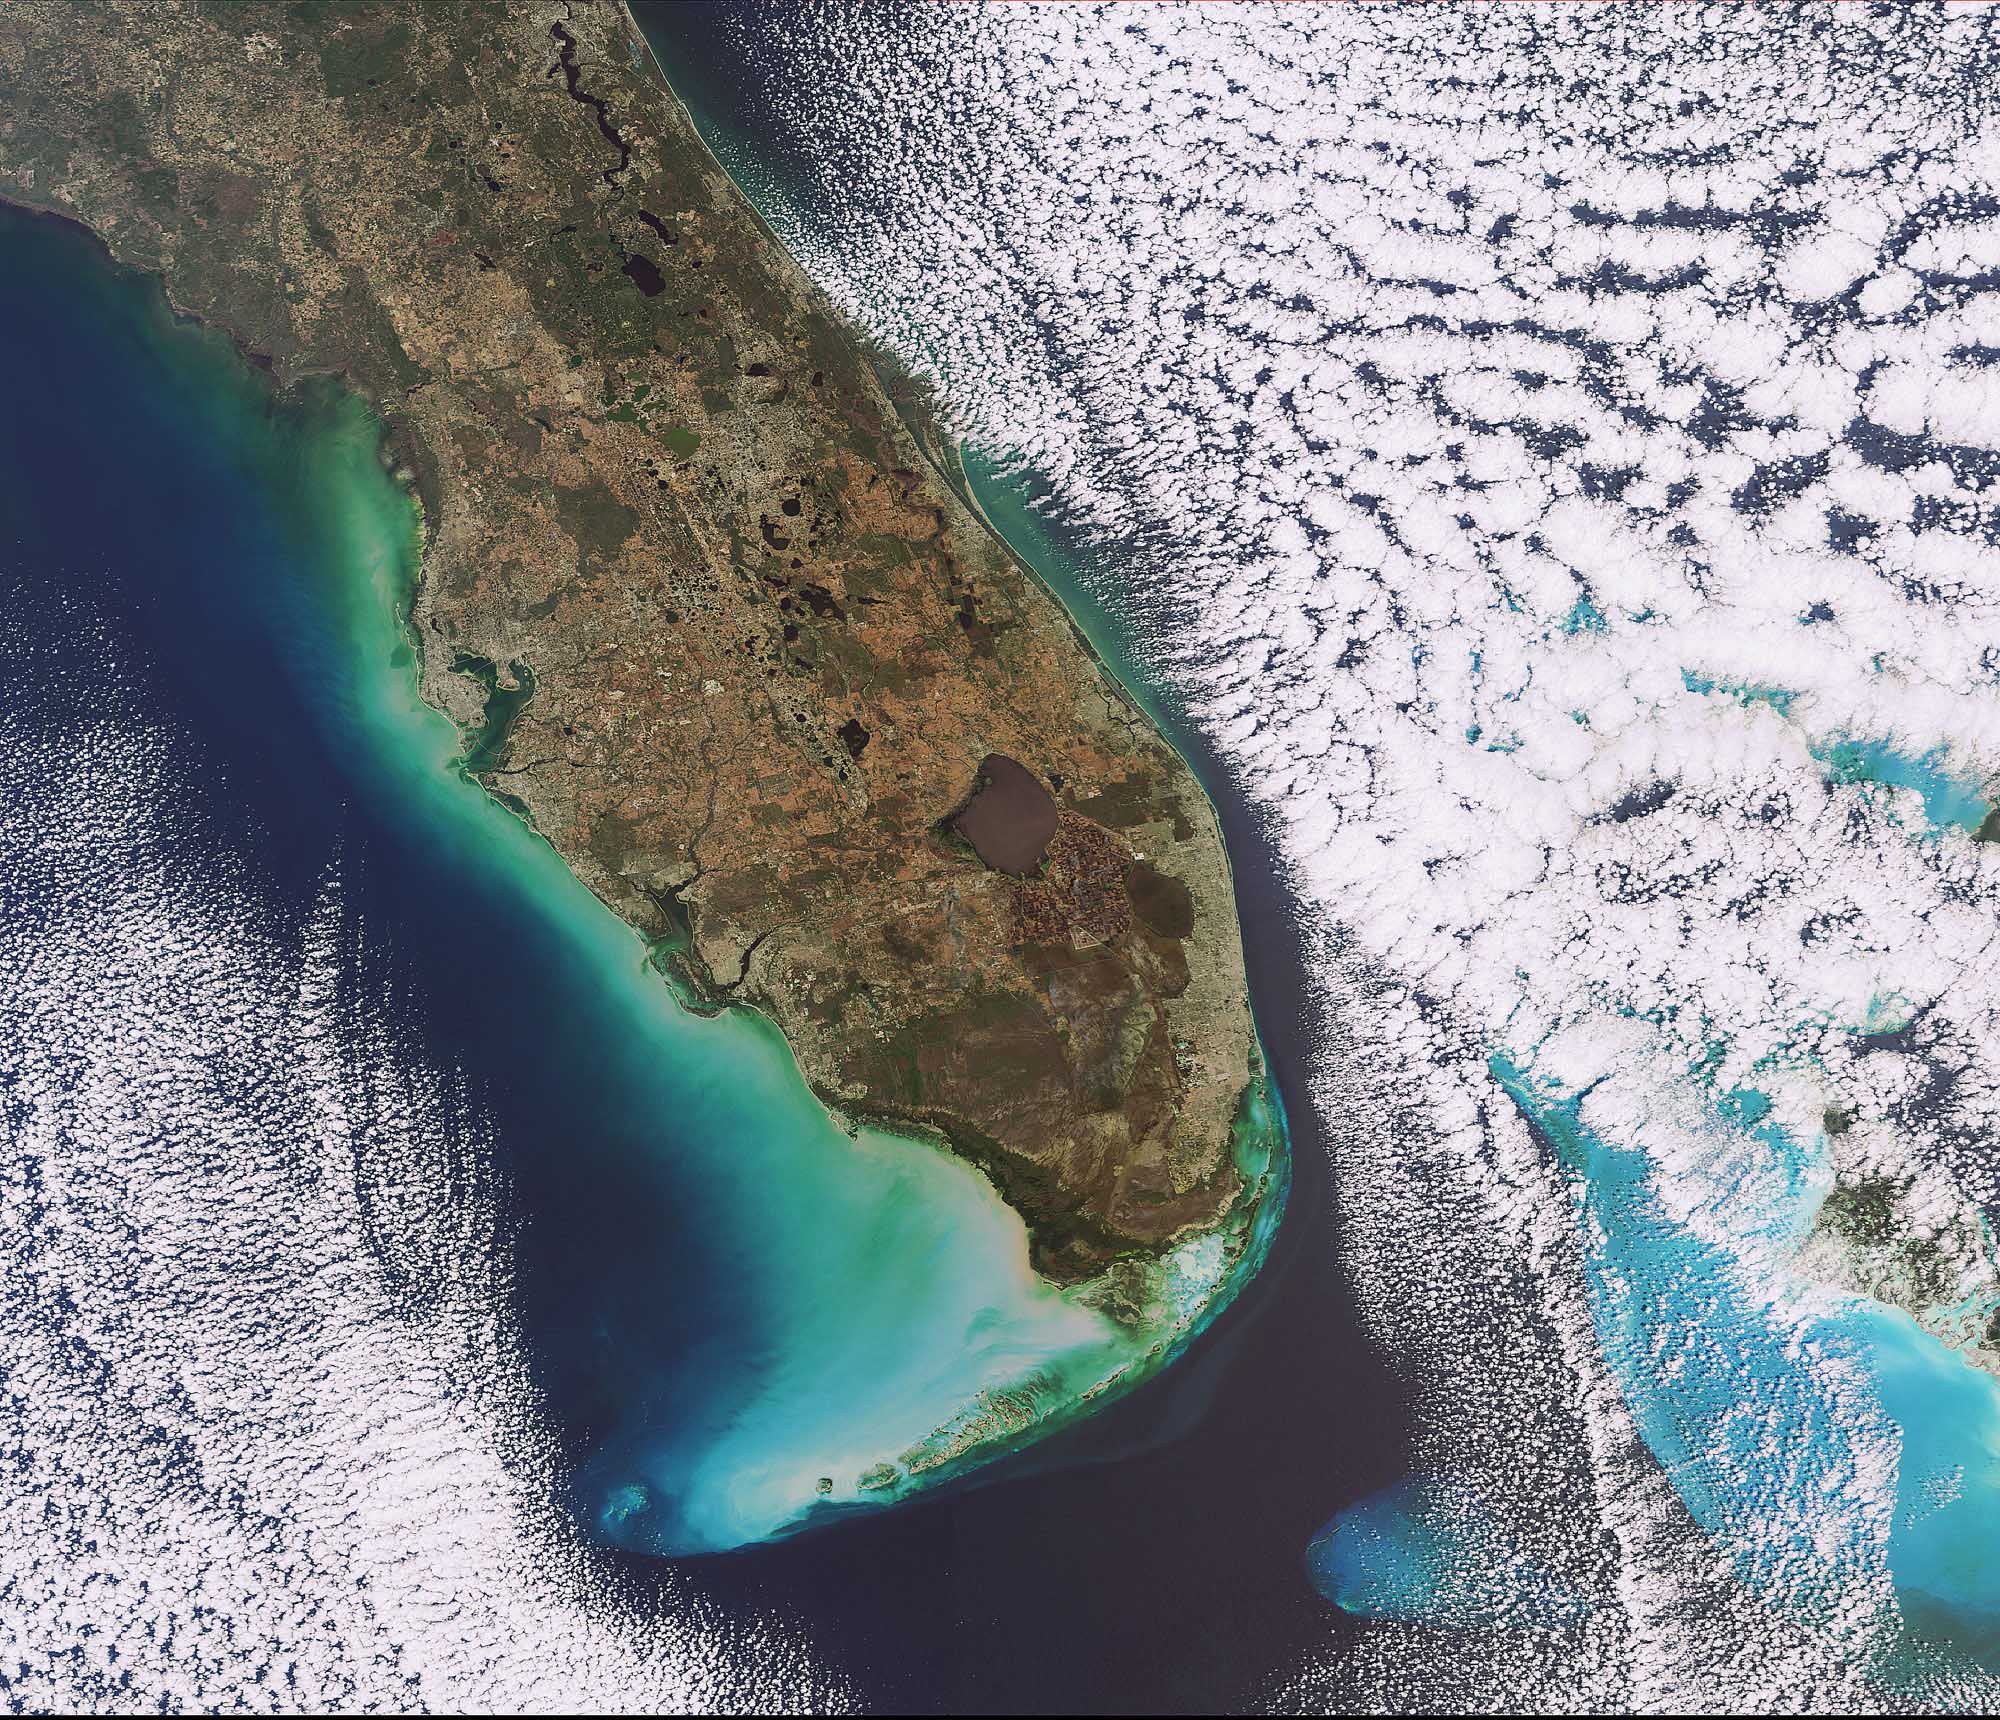 Cette image prise le 5 février 2009 par la caméra Meris (Medium Resolution Imaging Spectrometer) d’Envisat montre la pointe sud de la Floride, qui se situe au sud-est des Etats-Unis. La péninsule s’avance entre l’océan Atlantique (à droite) et le golfe du Mexique (à gauche) sur plus de 550 km. La résolution est de 300 mètres par pixel. La tache brune circulaire est le lac Okeechobee, le troisième plus grand lac d’eau douce entièrement situé aux Etats-Unis, après le lac Michigan et la lac Iliamna. Il couvre une surface d’environ 1.900 km2, pour 220 km de rivages et une profondeur moyenne de 4 m.